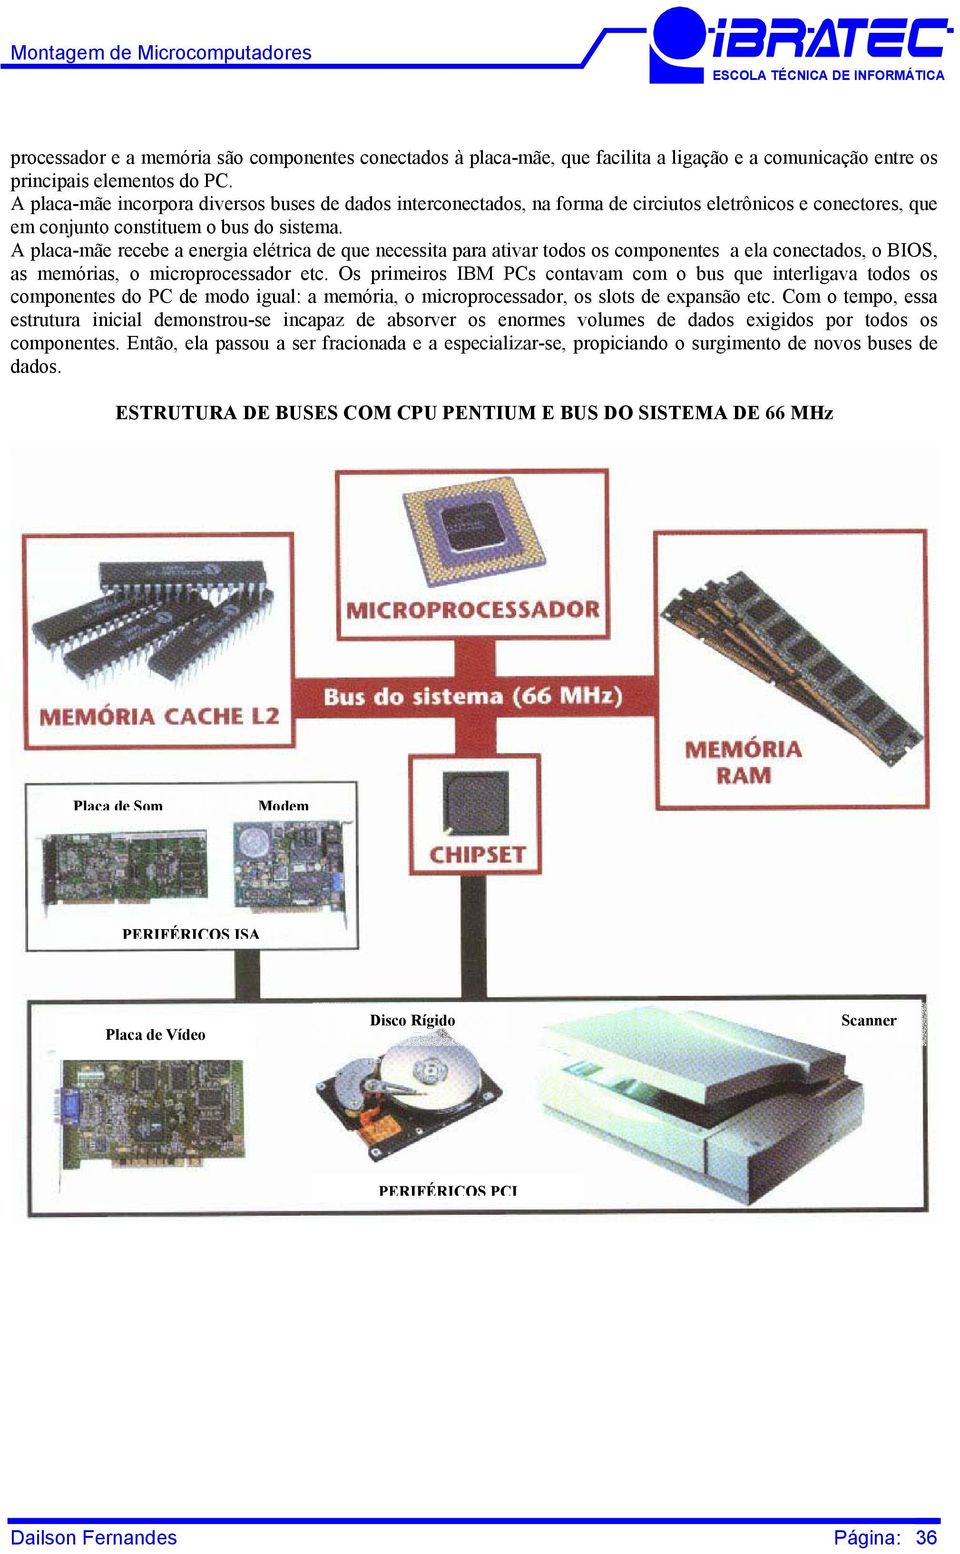 A placa-mãe recebe a energia elétrica de que necessita para ativar todos os componentes a ela conectados, o BIOS, as memórias, o microprocessador etc.